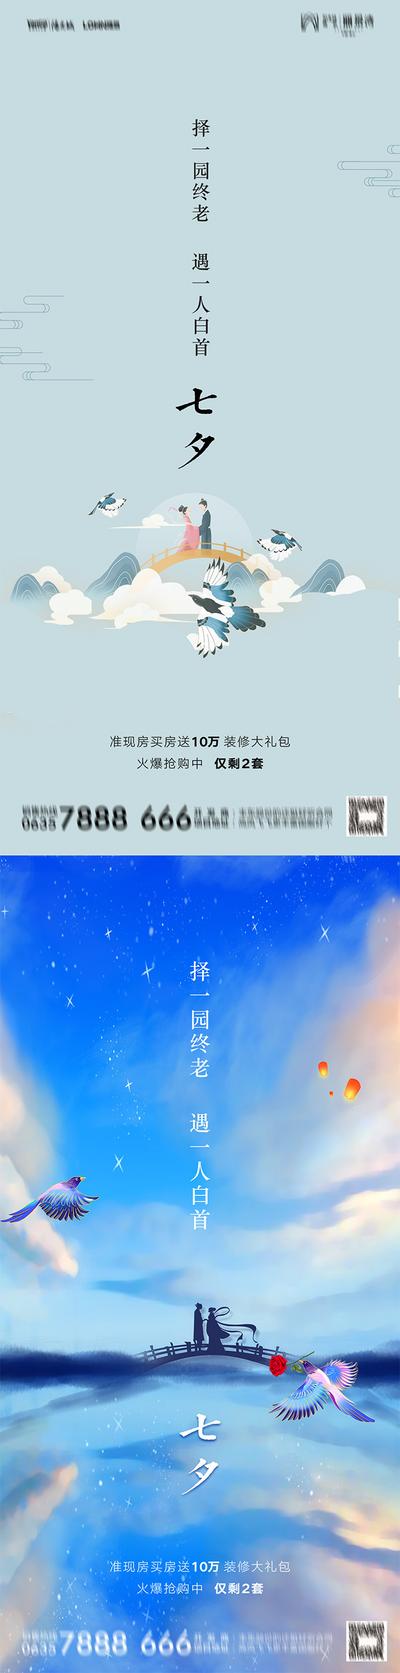 南门网 广告 海报 节日 七夕 情人节 520 鹊桥 插画 牛郎织女